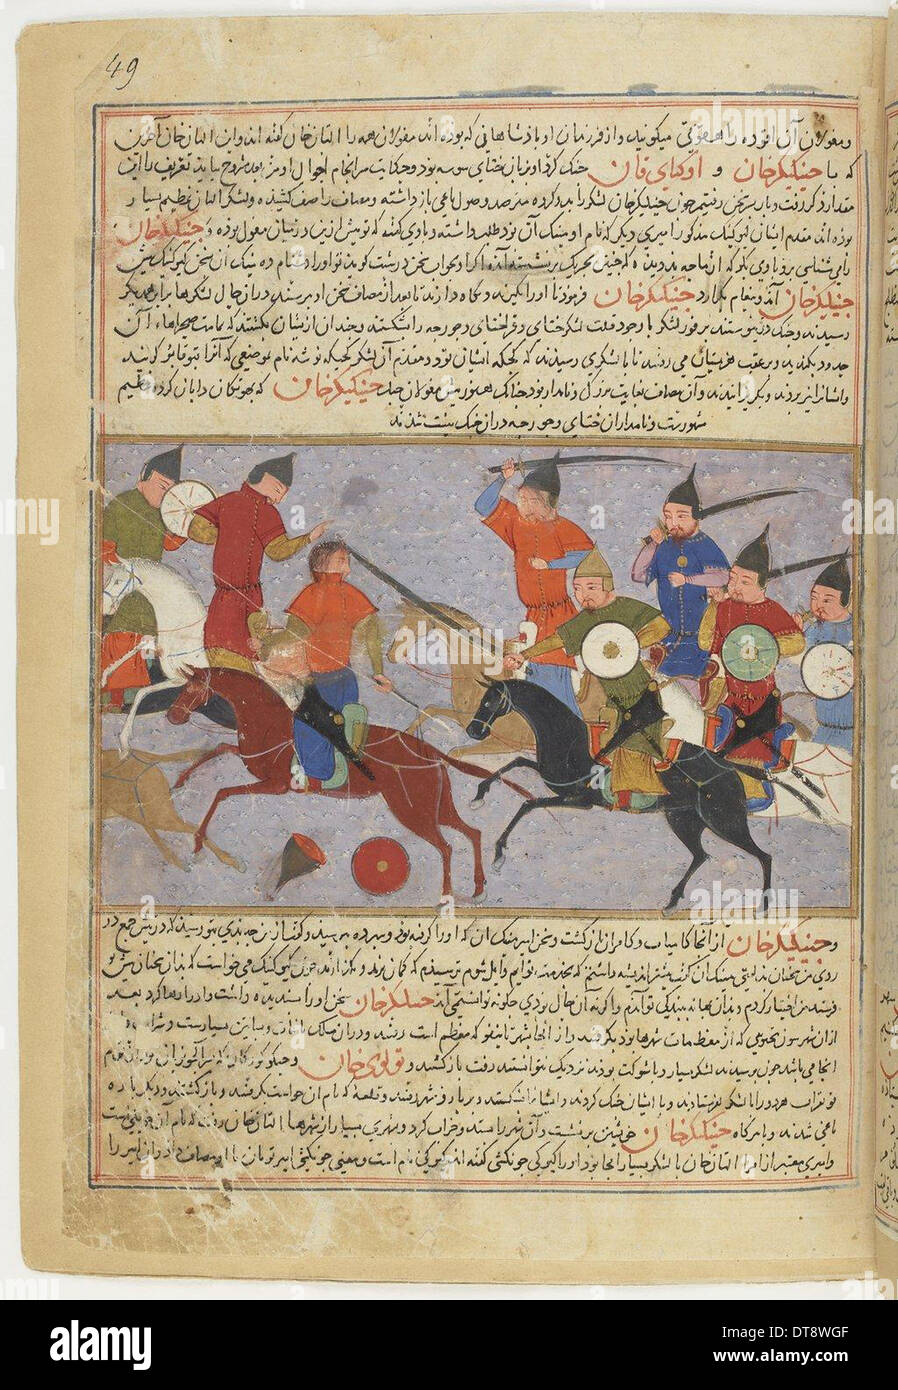 La battaglia tra il mongolo e Jin eserciti Jurchen nella Cina del Nord nel 1211. Miniatura di Jami' al-taw Artista: Anonimo Foto Stock